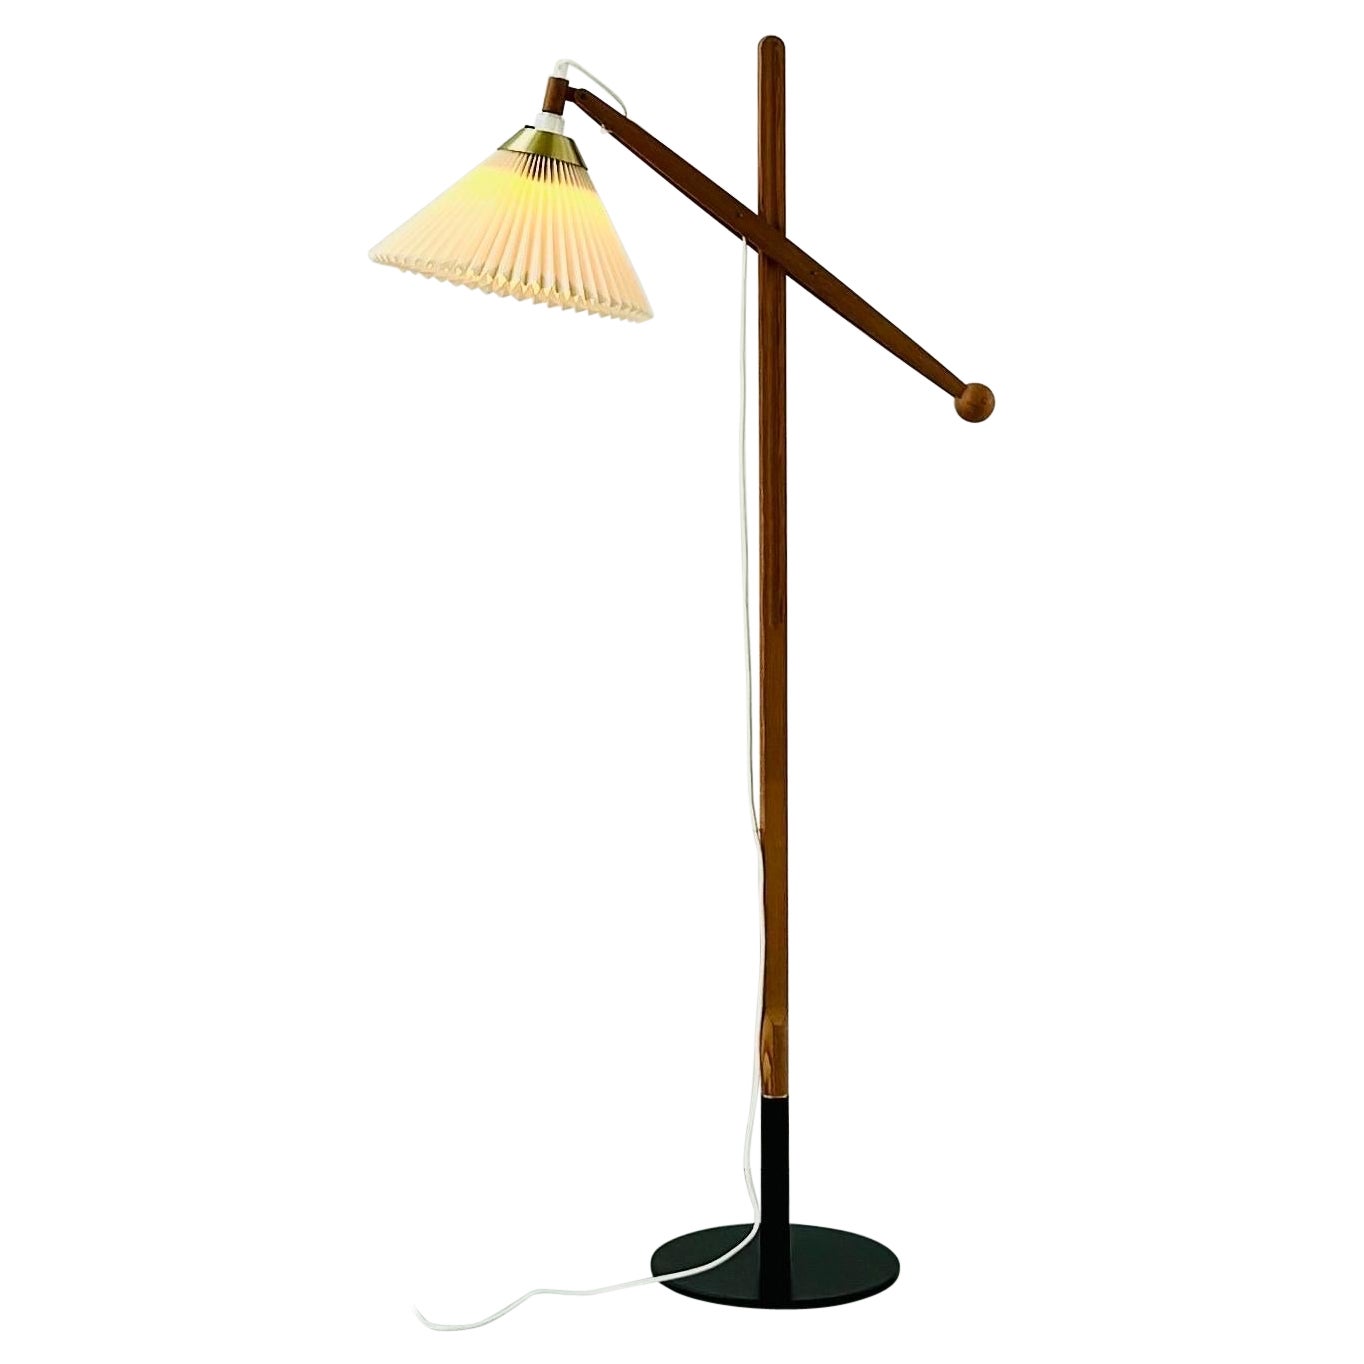 Dänische moderne Stehlampe Le Klint, entworfen von Vilhelm Wohlert, 1960er Jahre, Dänemark